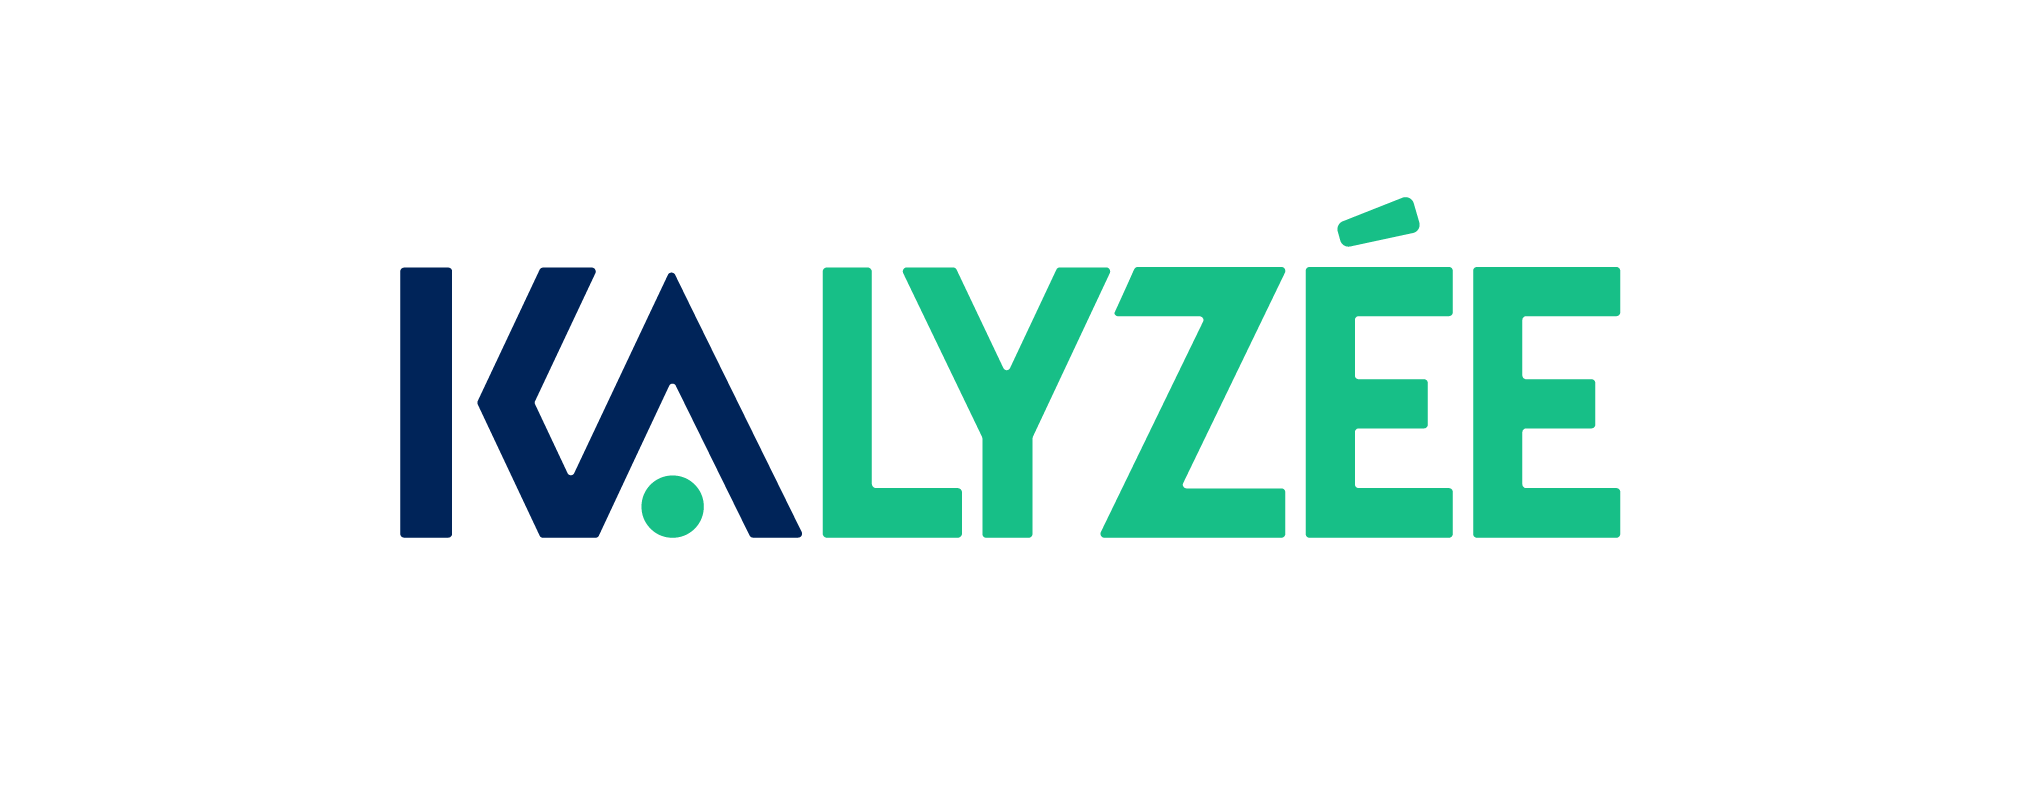 Kalysee - Partenaire officiel - SILVER